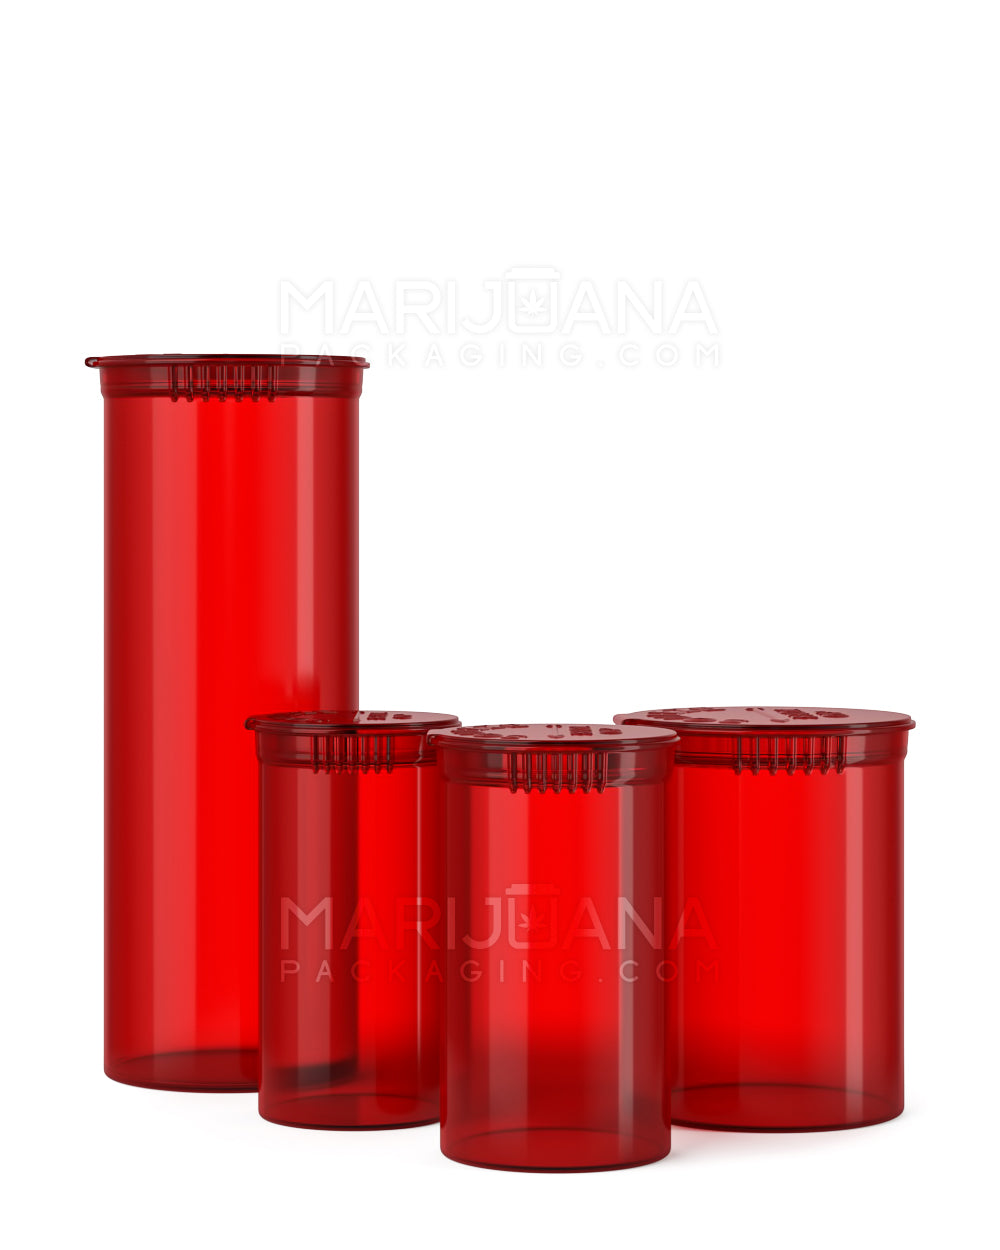 Child Resistant | Transparent Red Pop Top Bottles | 19dr - 3.5g - 225 Count - 5